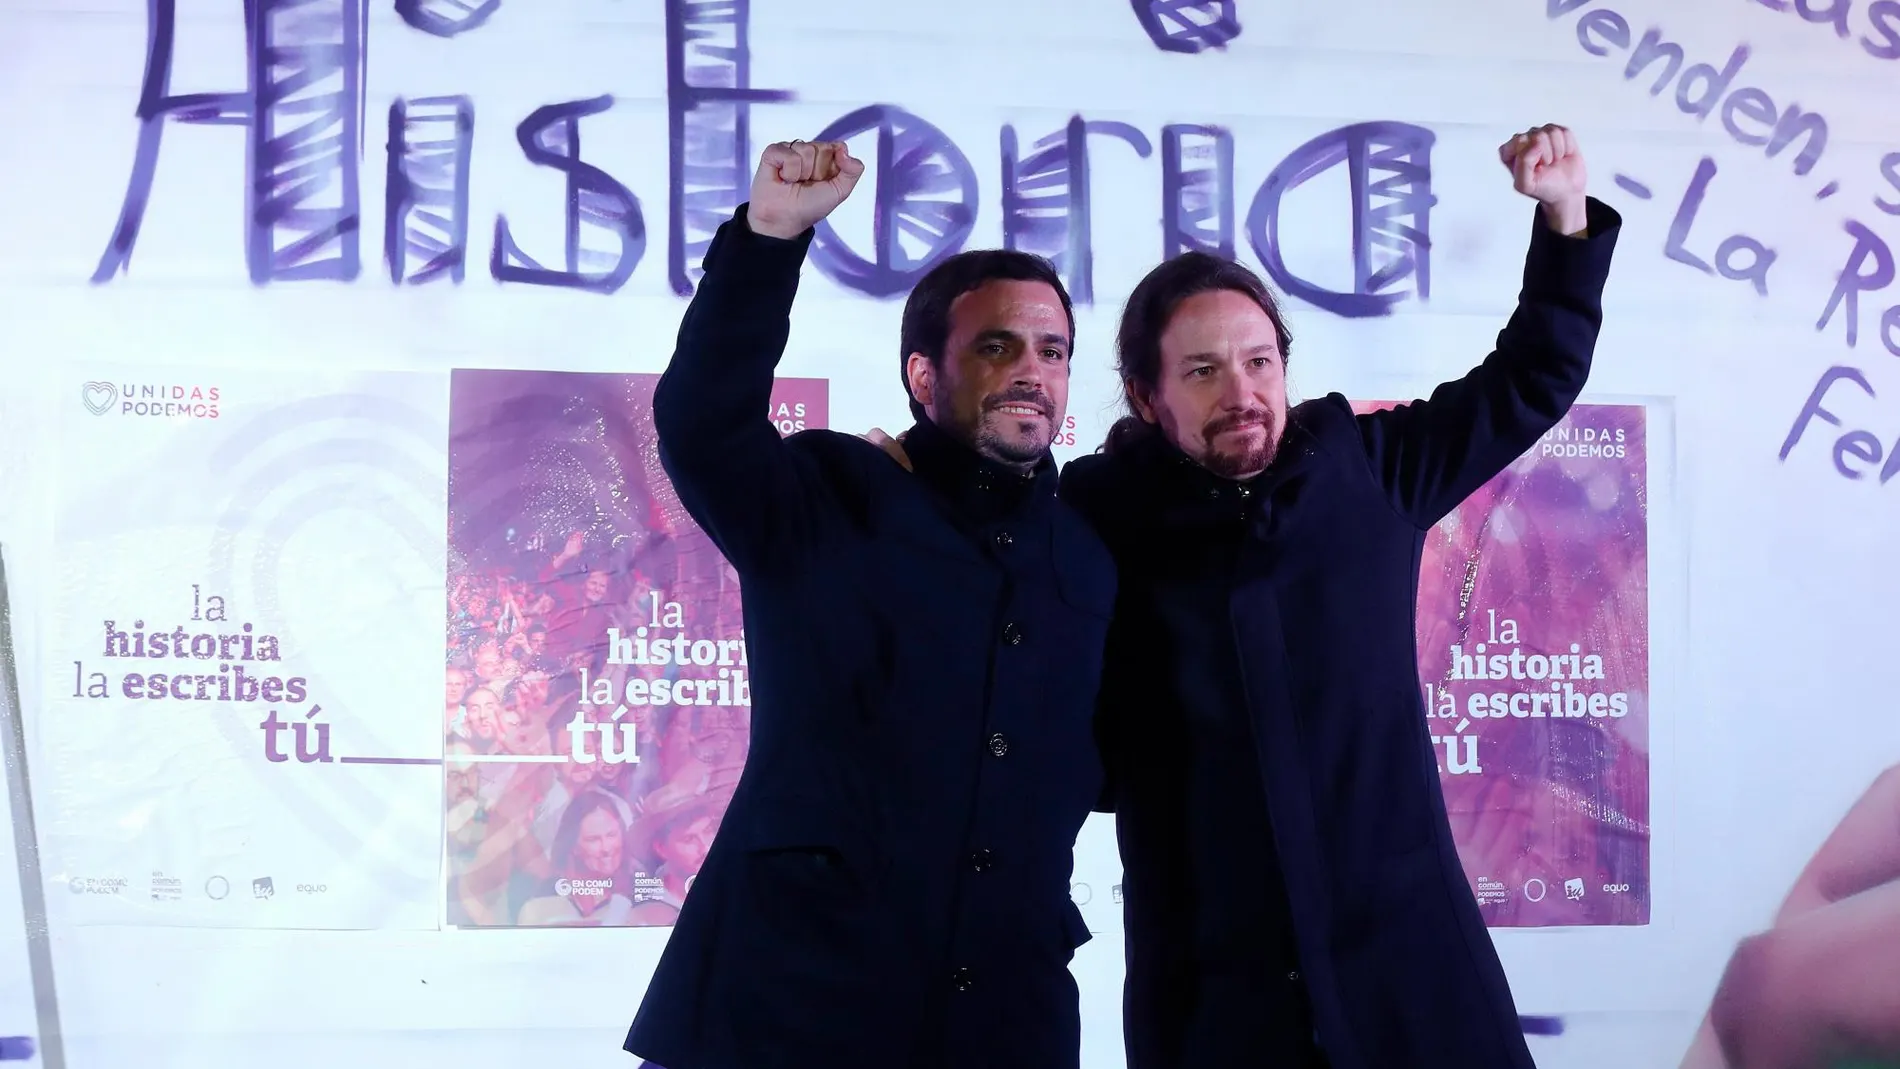 Alberto Garzón y Pablo Iglesias, líderes más influyentes y con un mayor número de seguidores en redes sociales, respectivamente